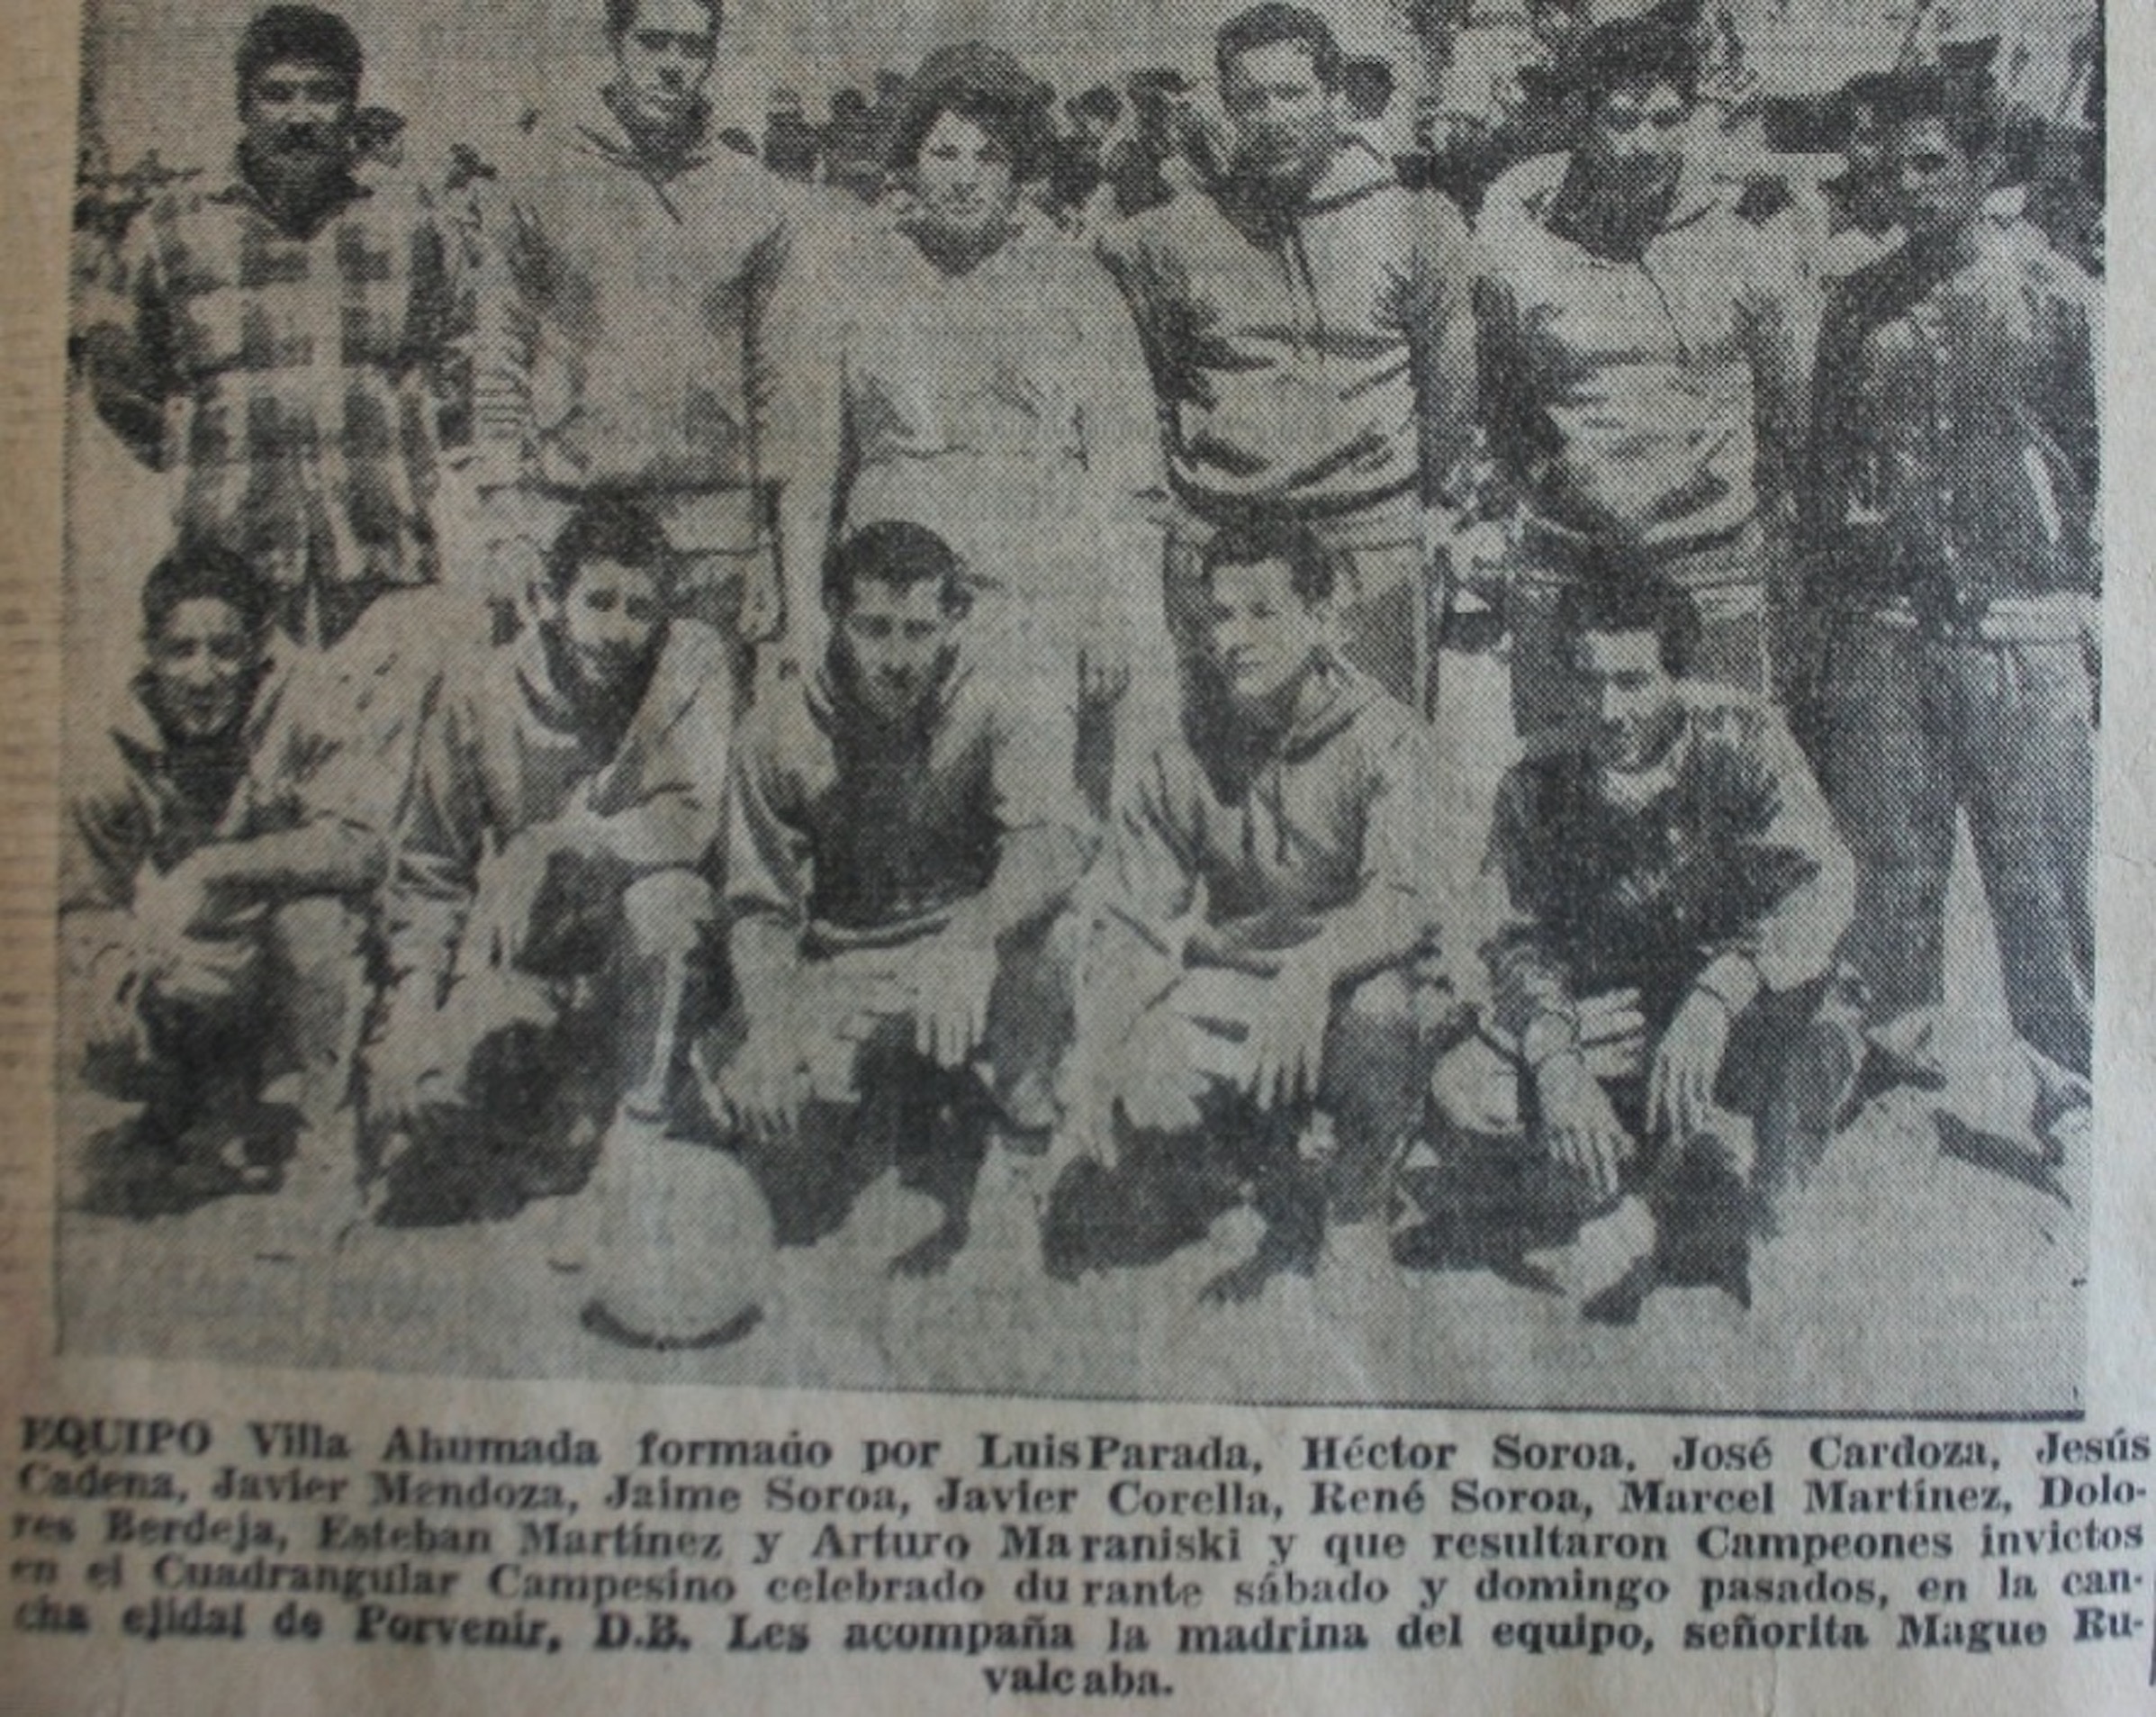 Equipo de Ahumada, 1961